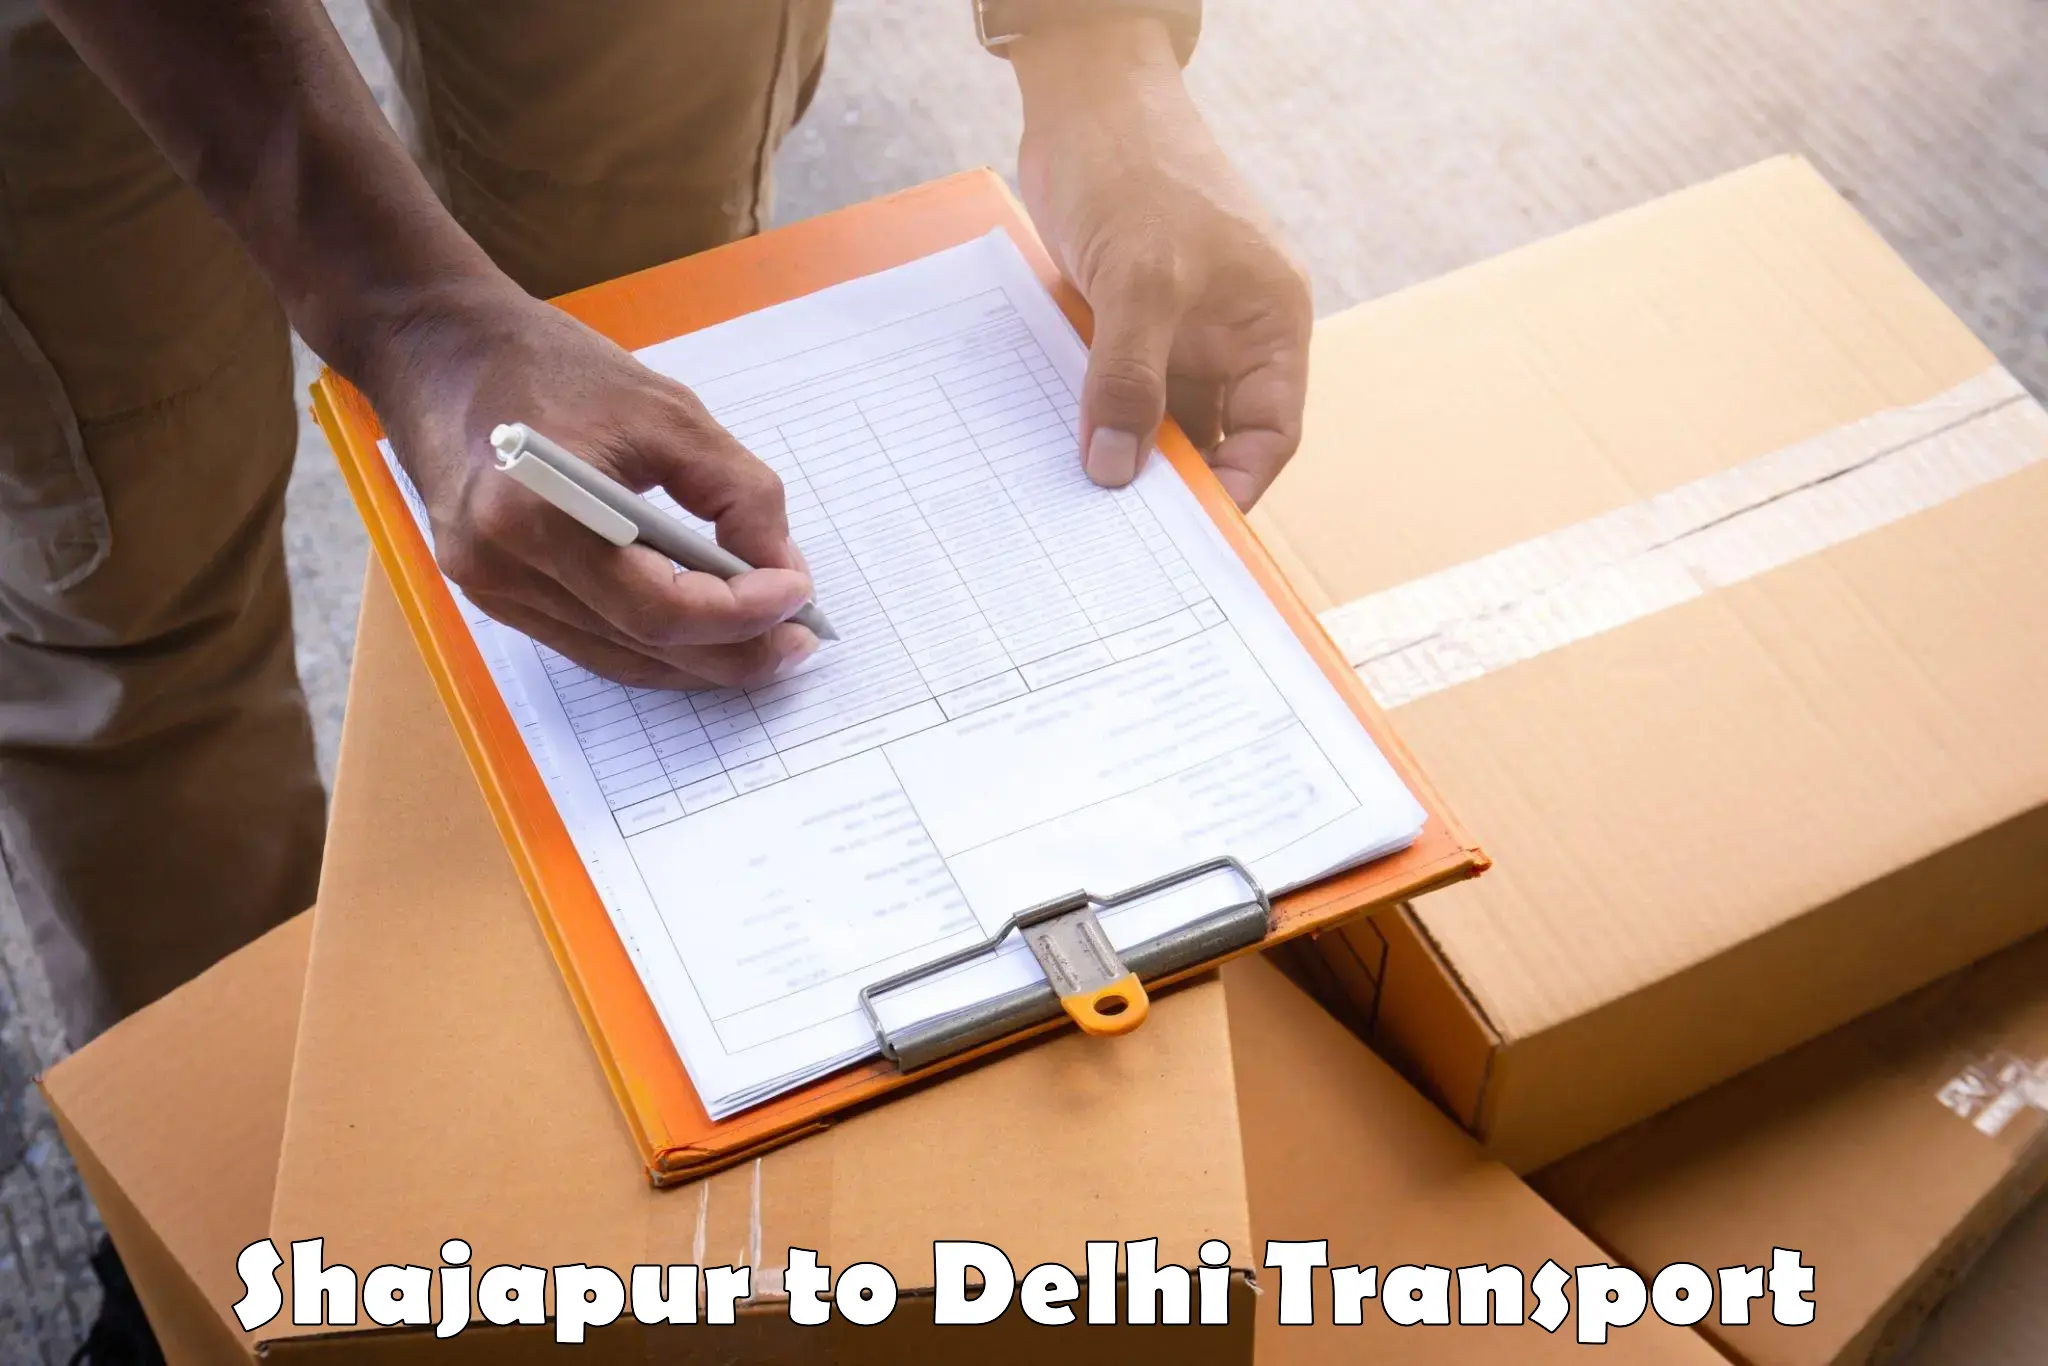 Online transport service Shajapur to Indraprastha